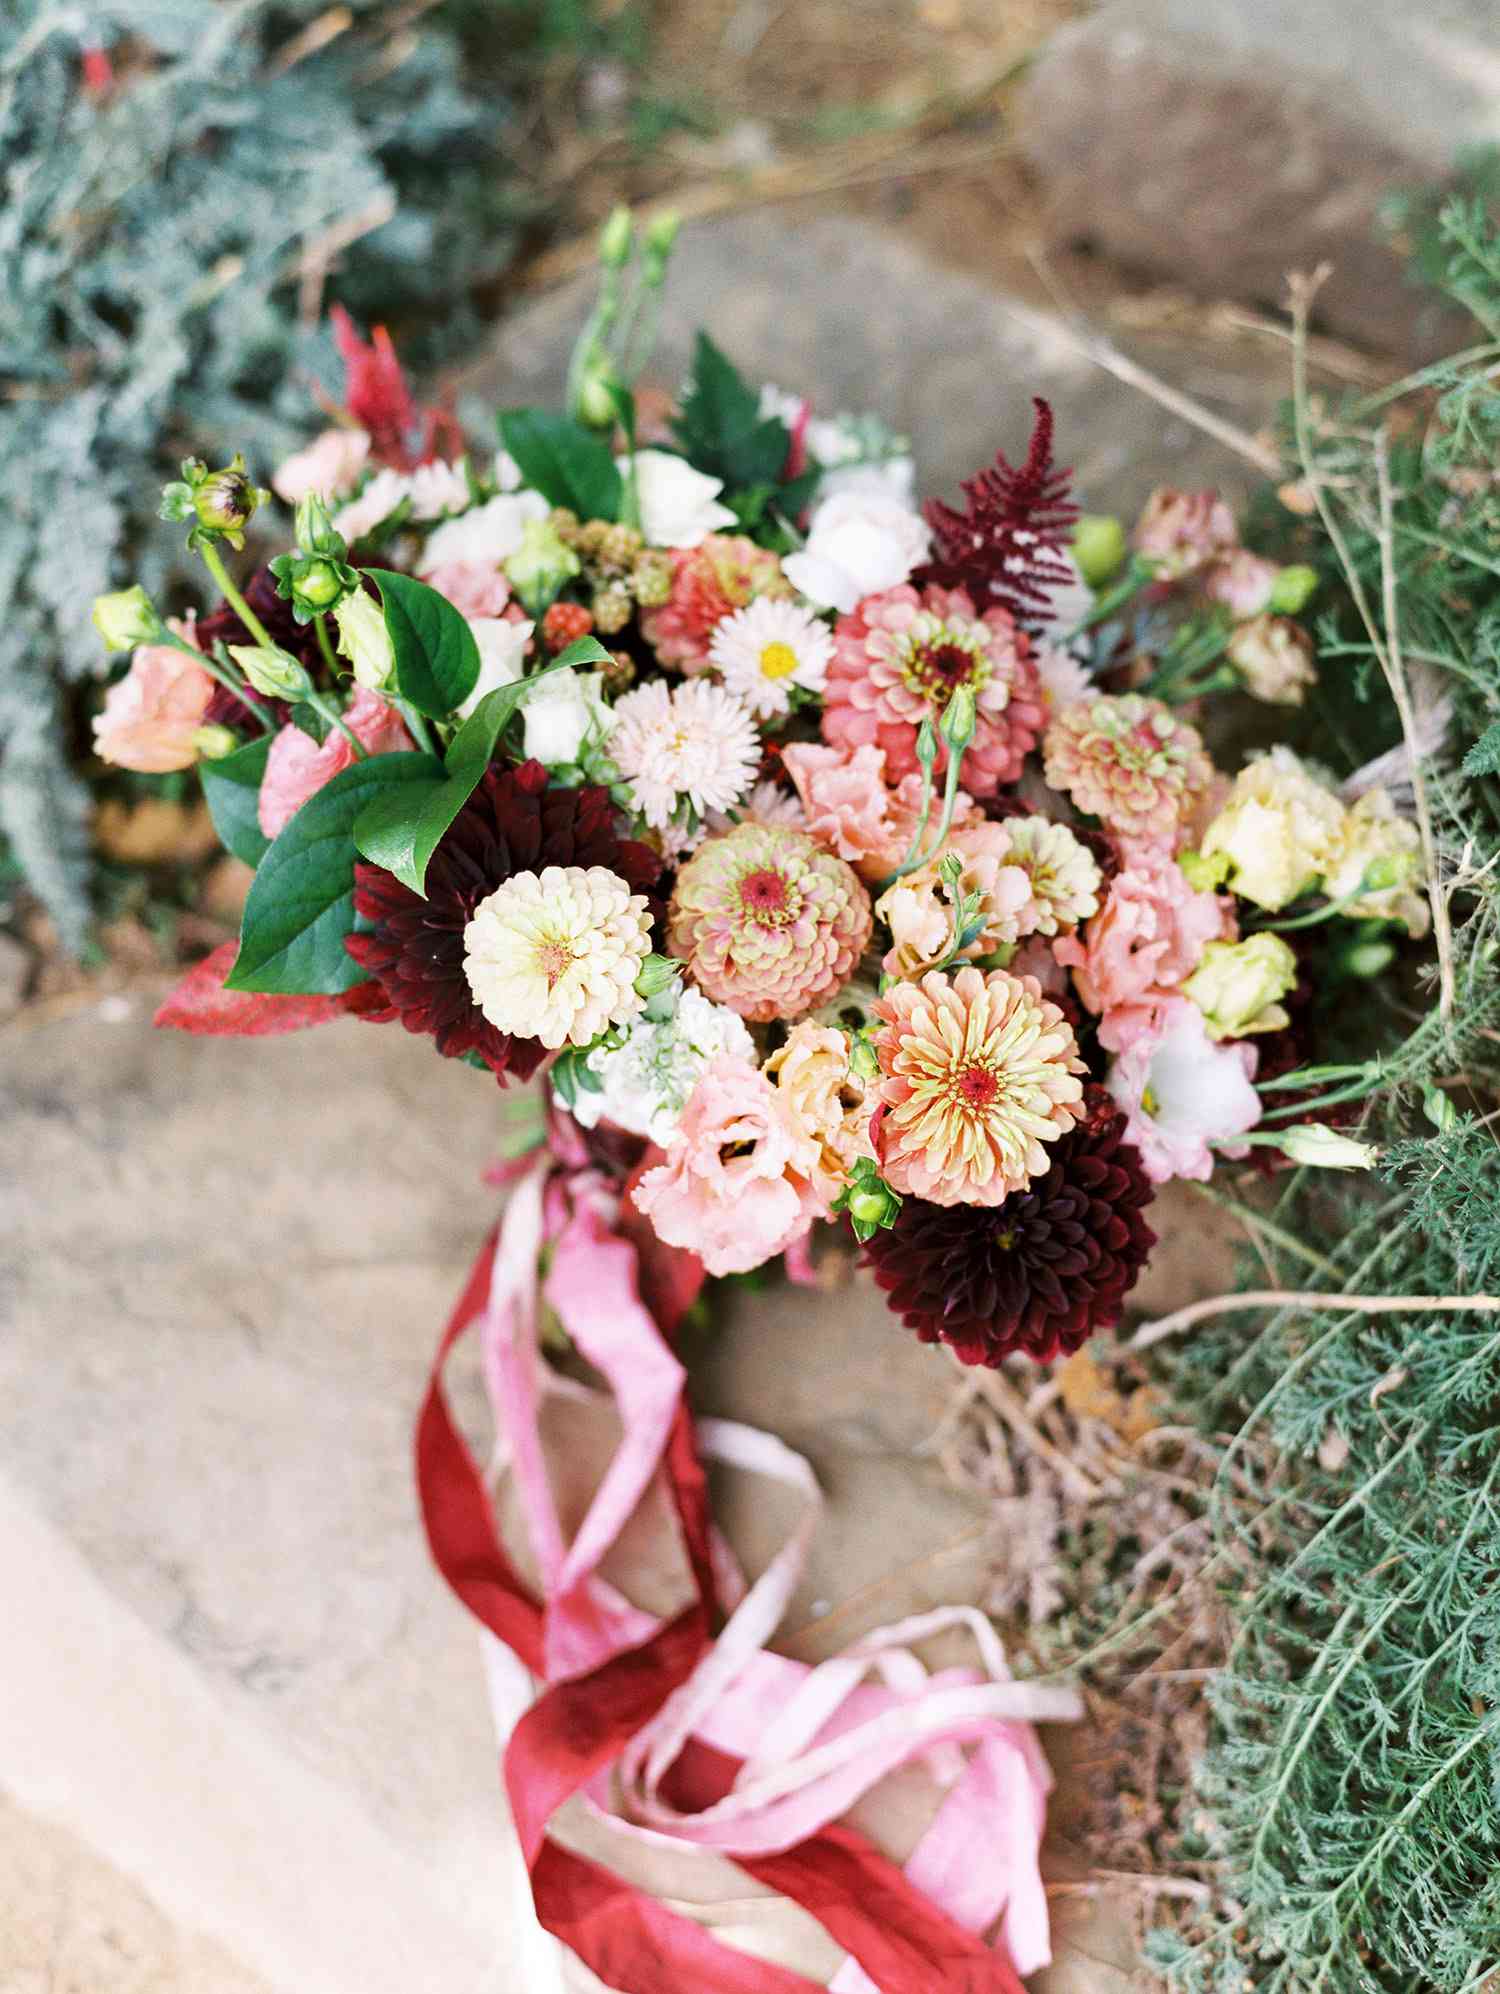 christina ken wedding bouquet of flowers